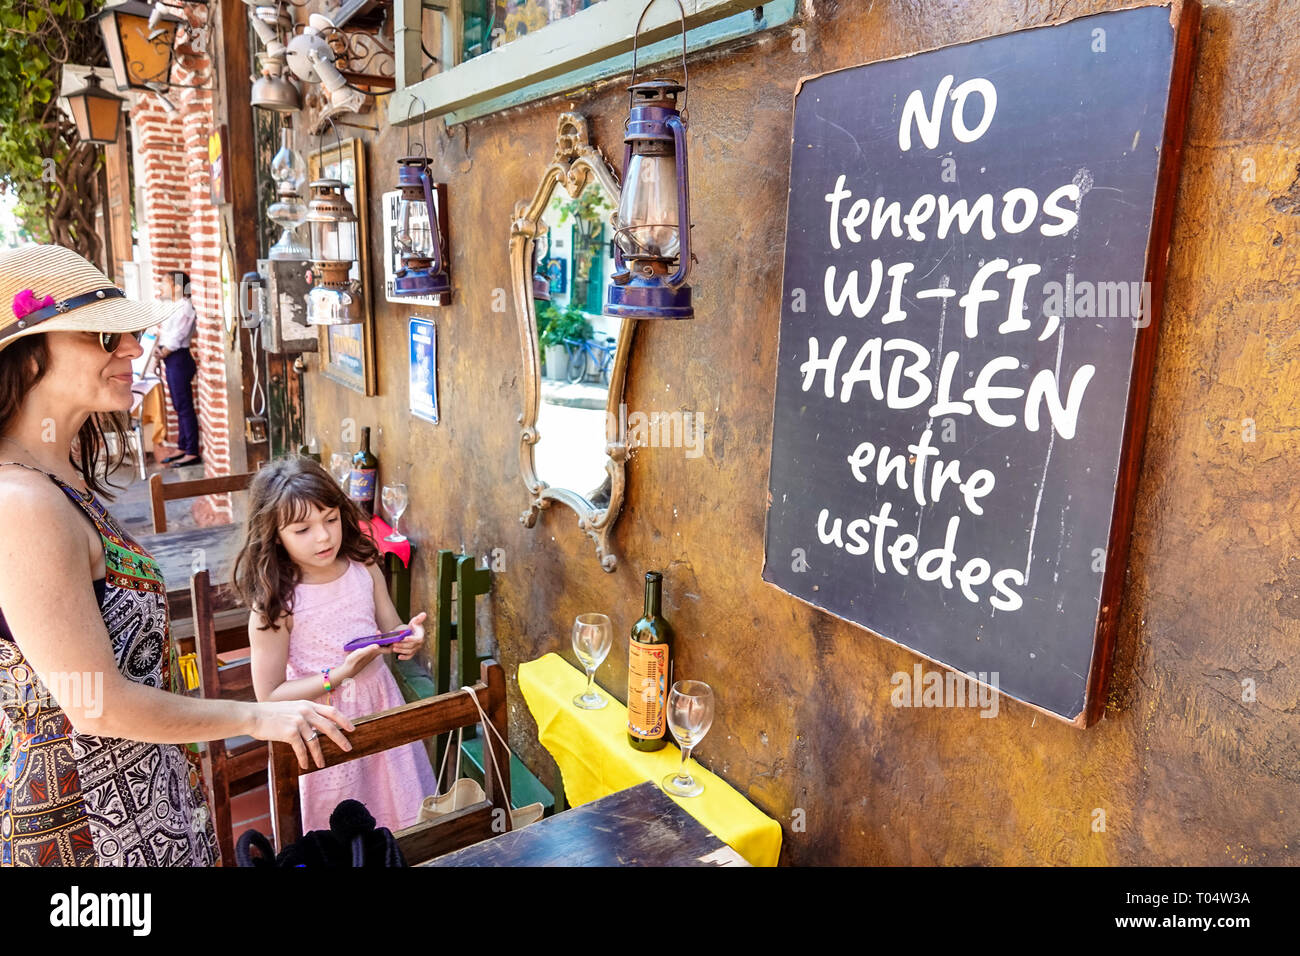 Cartagena Kolumbien,Hispanic ethnische Frau weibliche Frauen,suchen,Mutter,Tochter,Mädchen,Mädchen Kinder Kinder Kinder,kein wi-Fi,Marzola Parrilla Arge Stockfoto